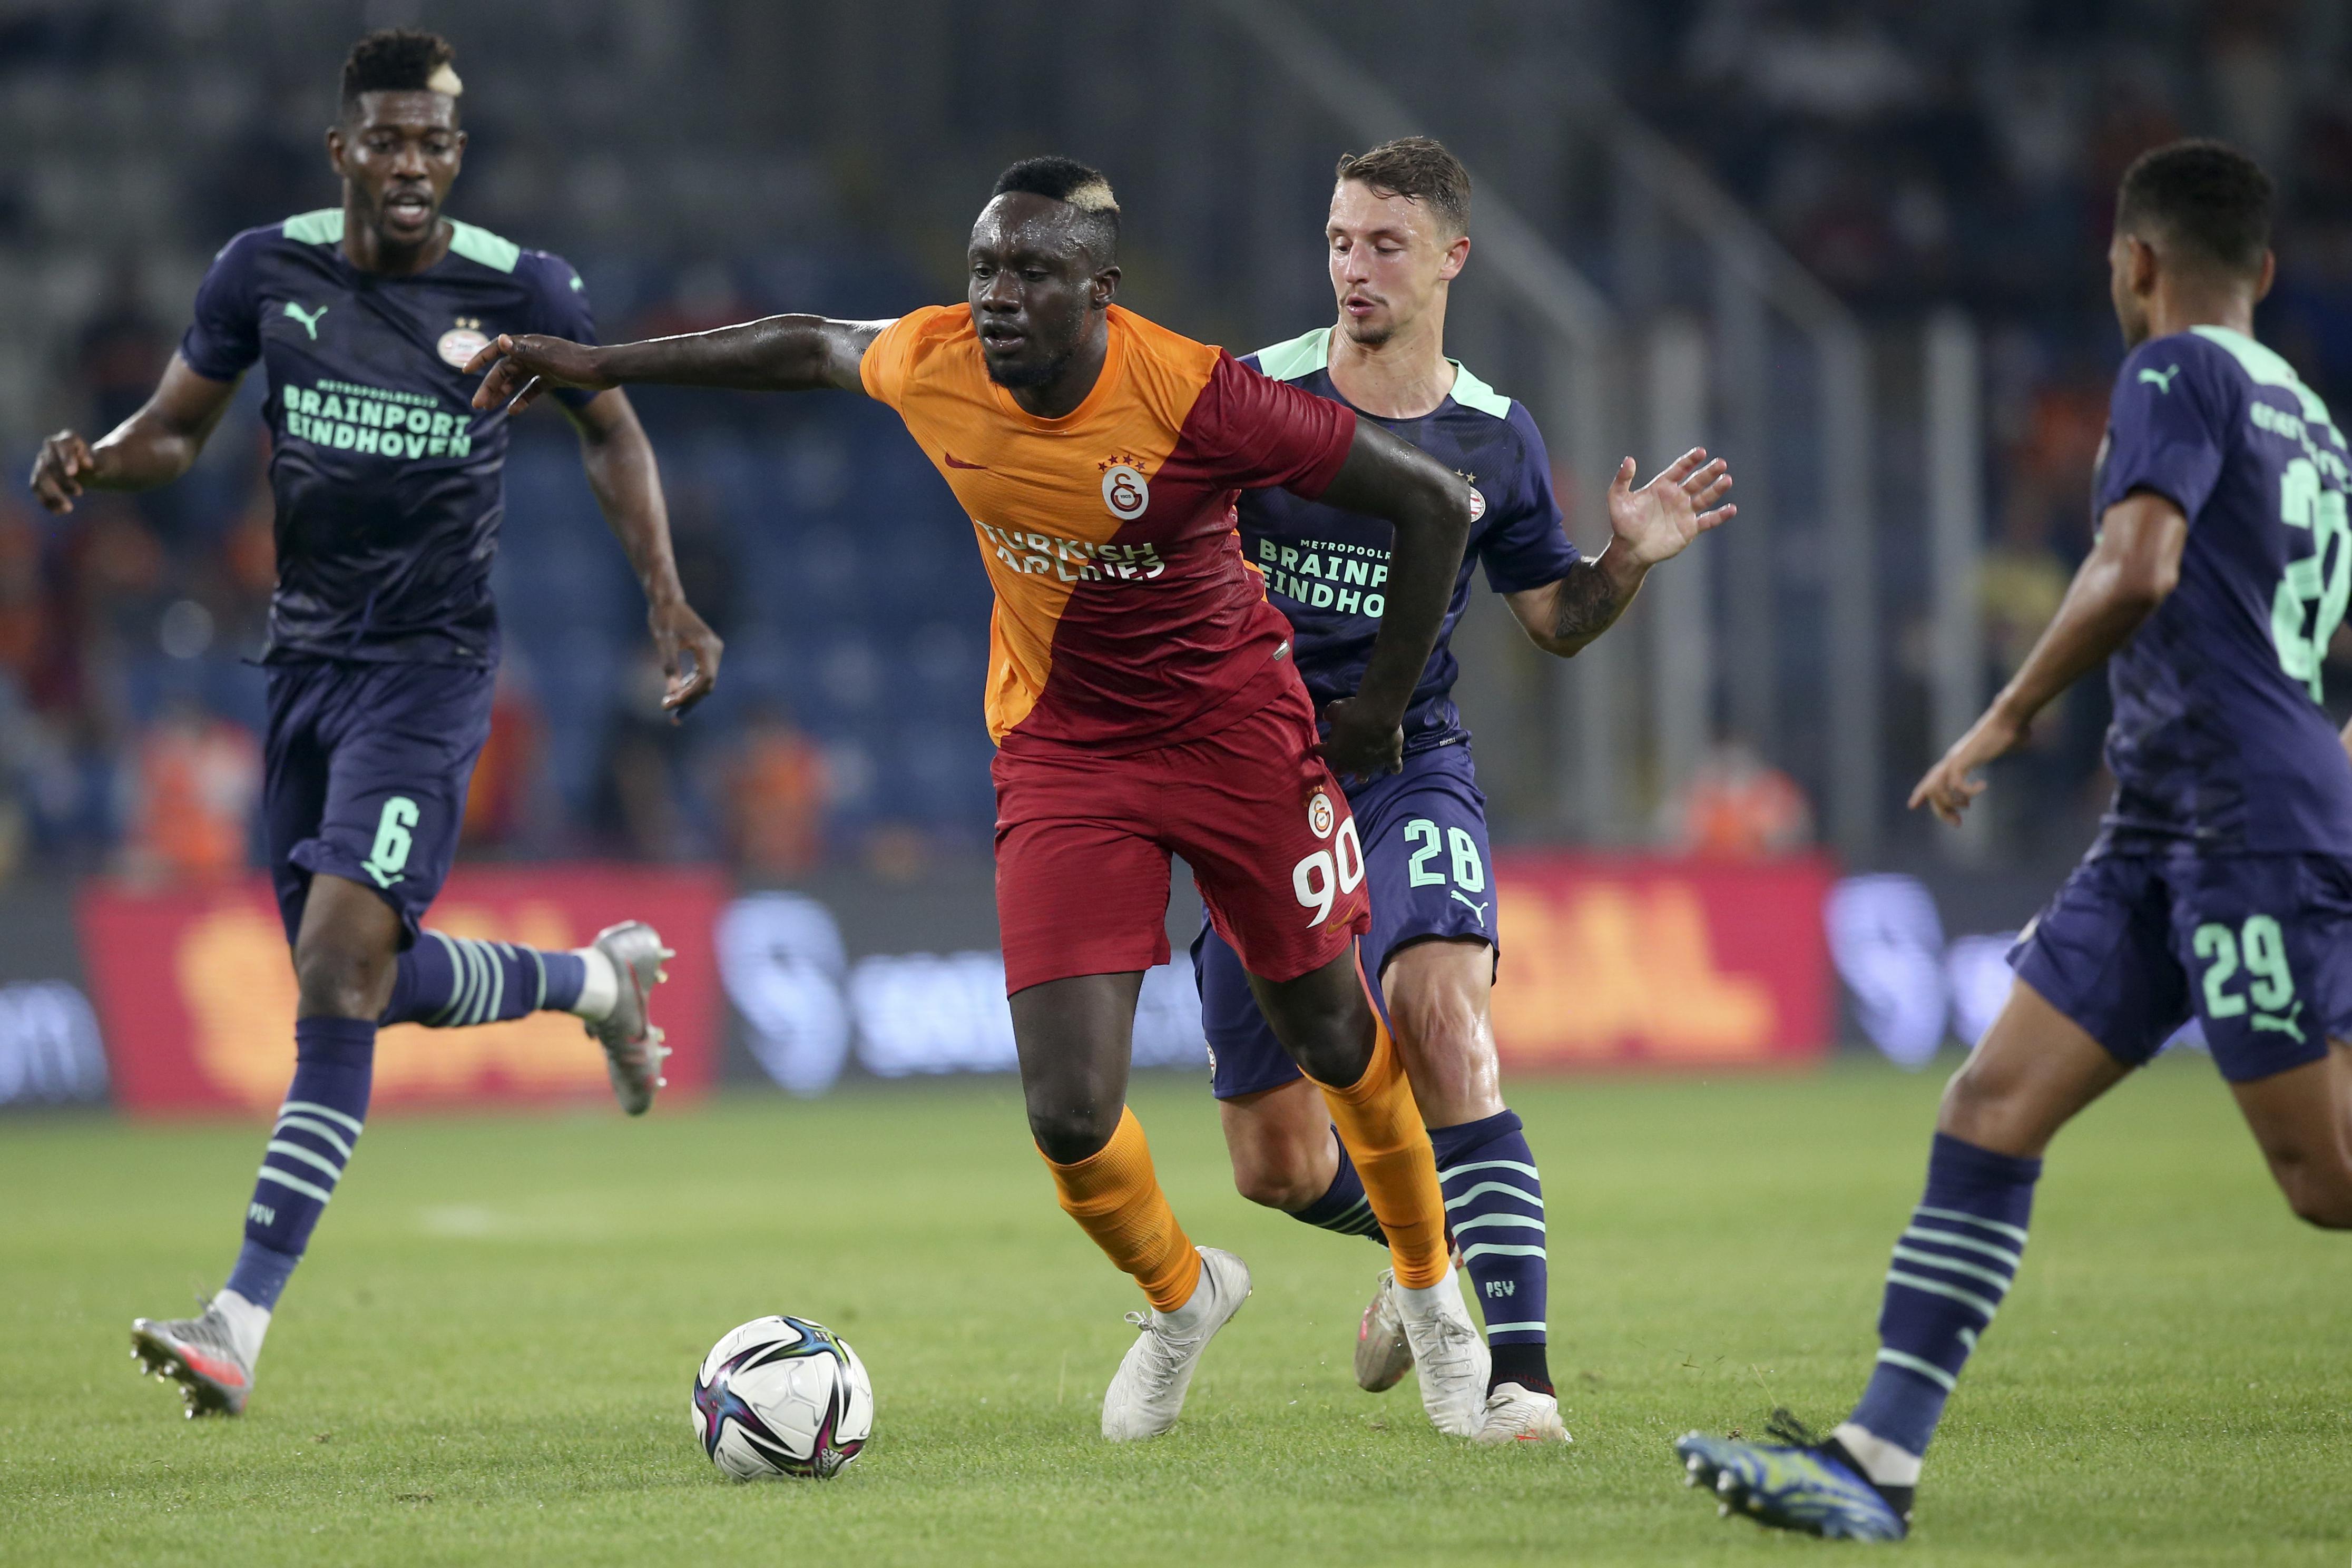 Son dakika Galatasaray haberi: (ÖZET) Galatasaray - PSV maç sonucu: 1-2